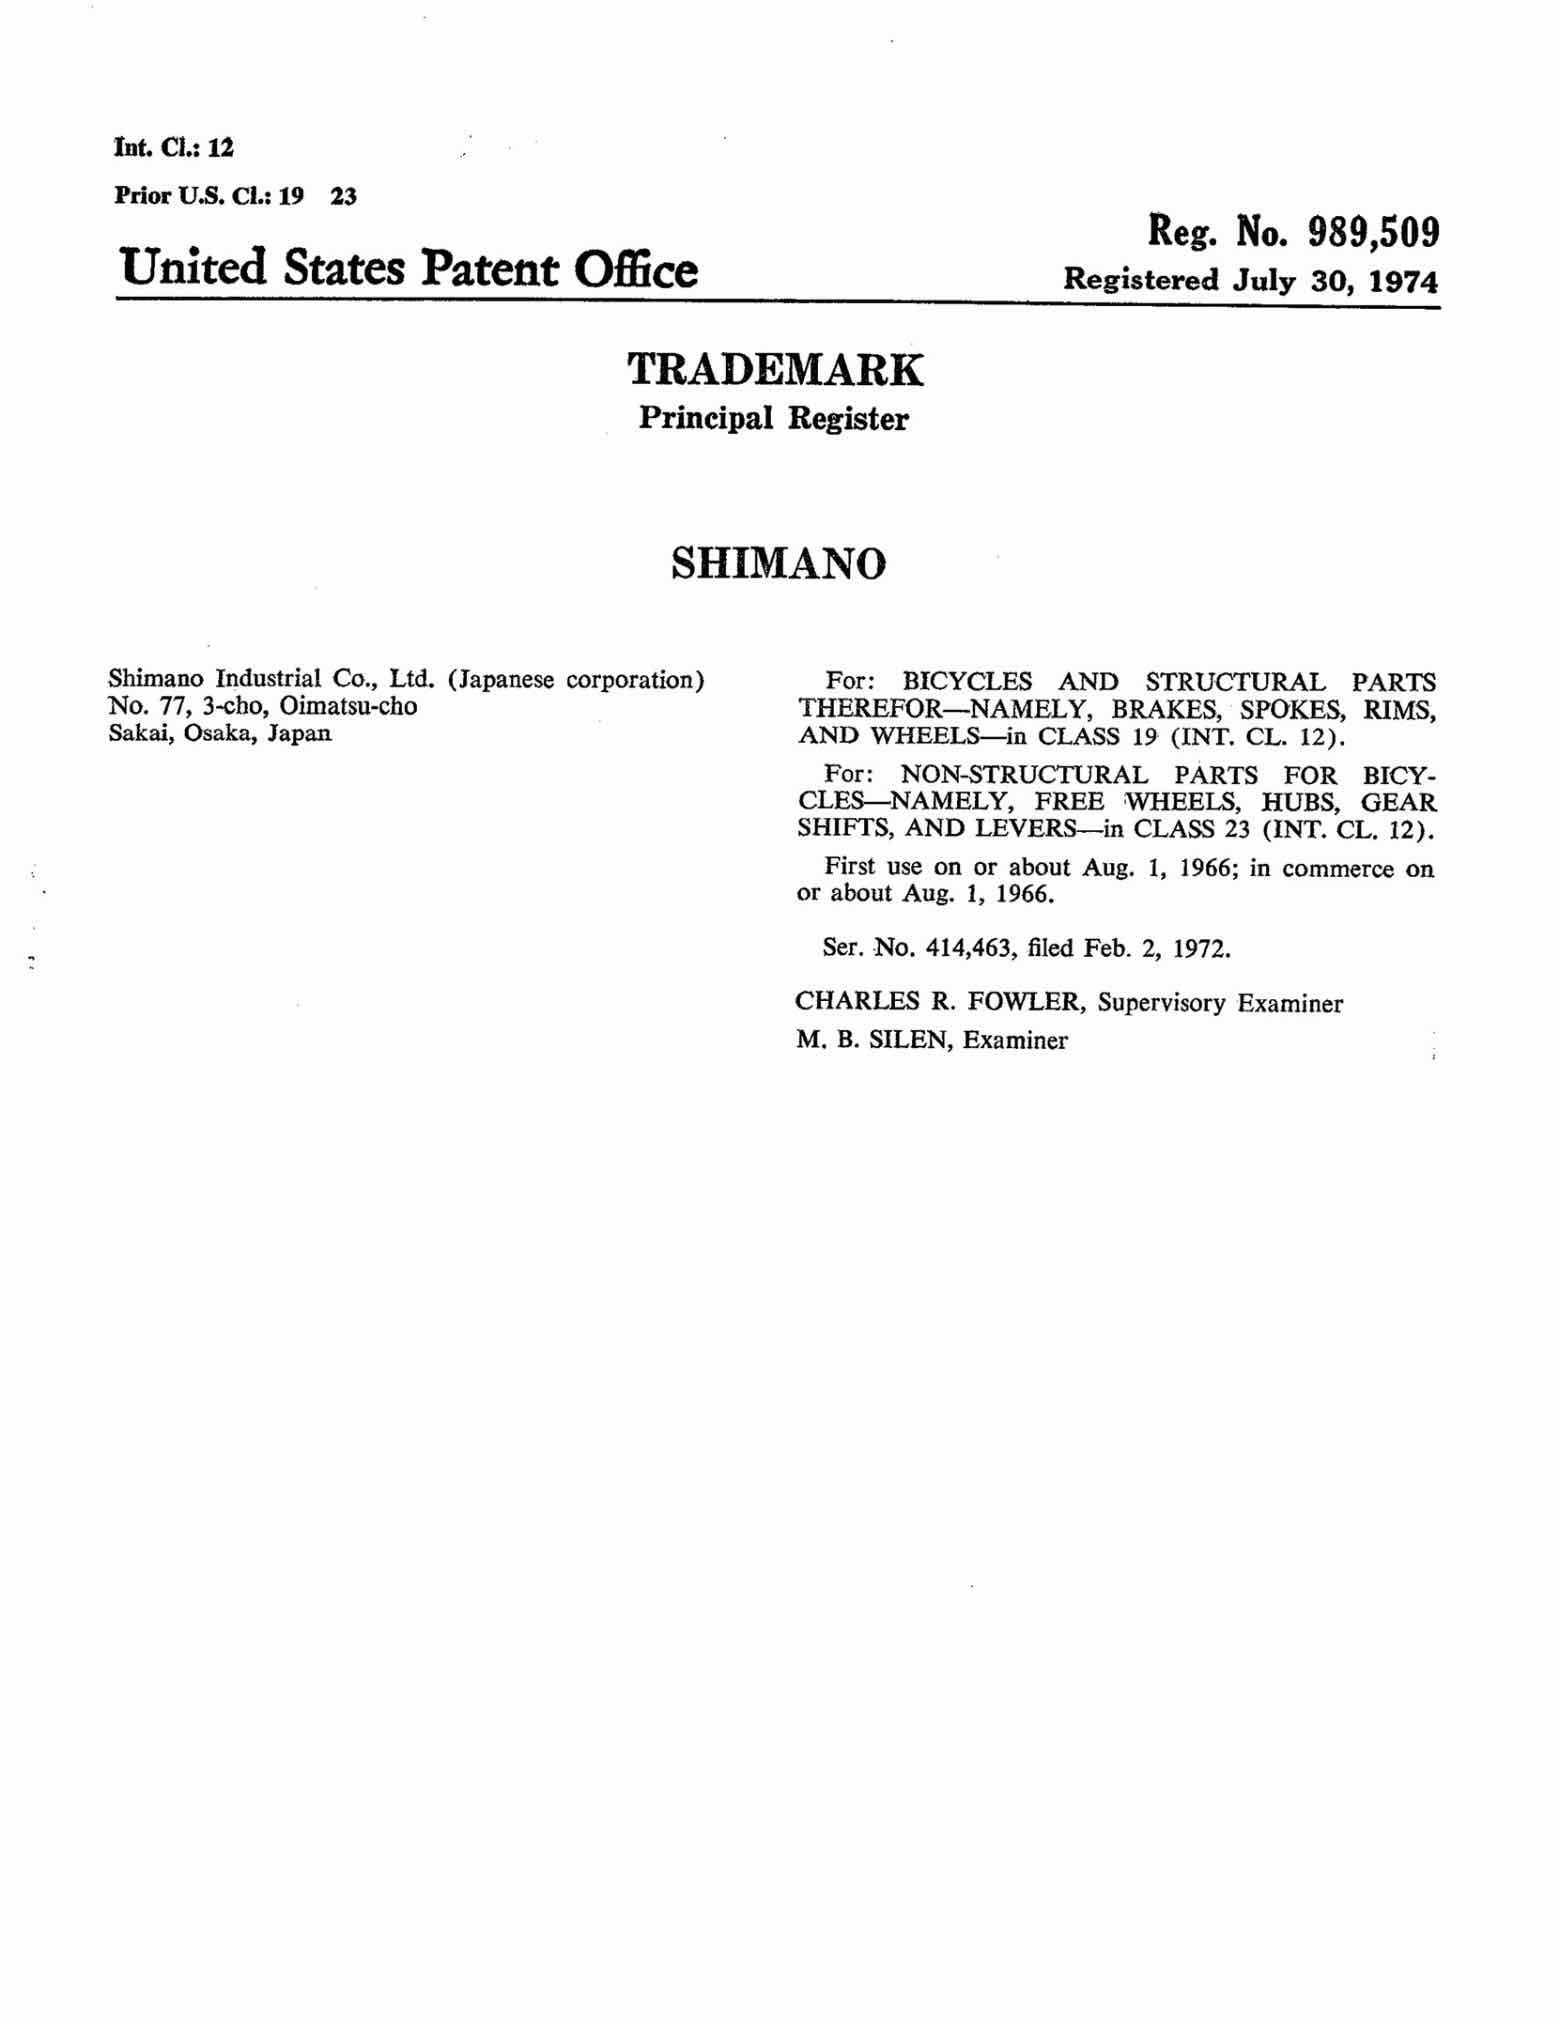 US Trademark 989,509 - Shimano main image